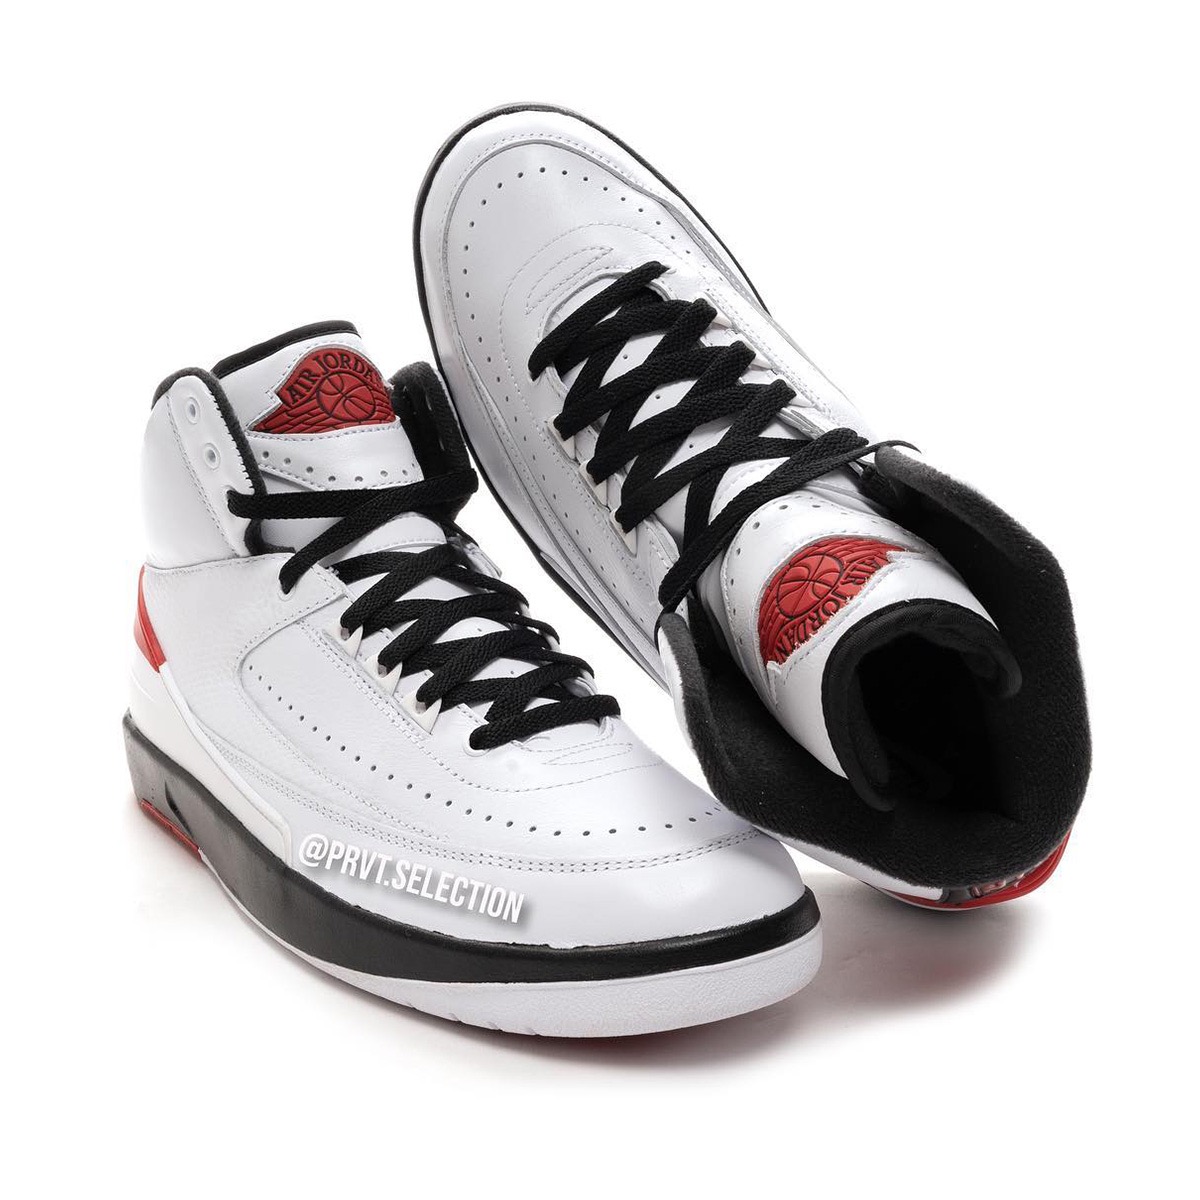 Nike Air Jordan 2 Retro OG “Chicago”が2022年12月30日に復刻発売予定 